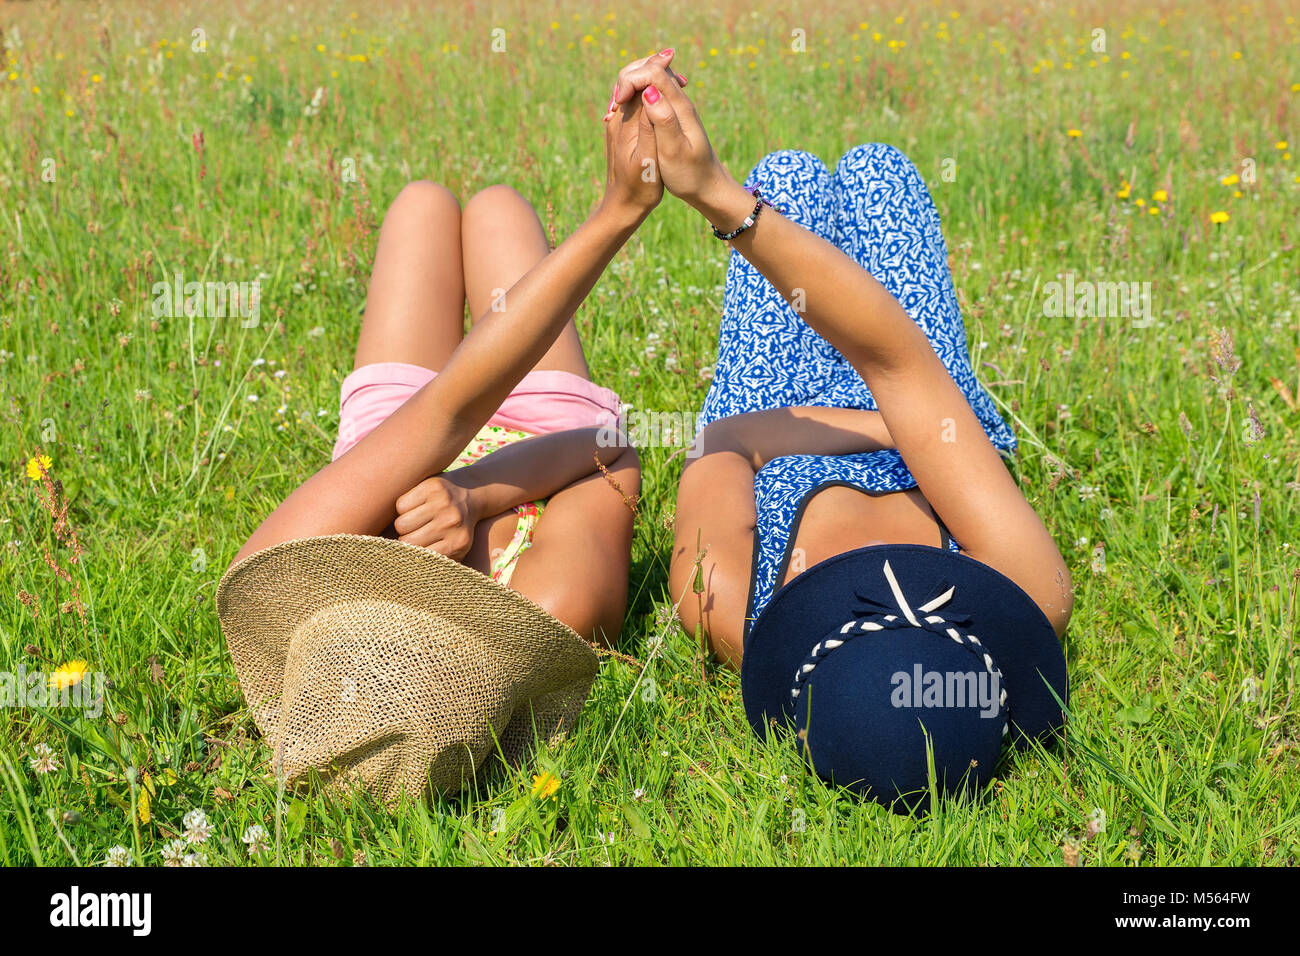 Deux amis se trouvant côte à côte dans l'herbe verte Banque D'Images